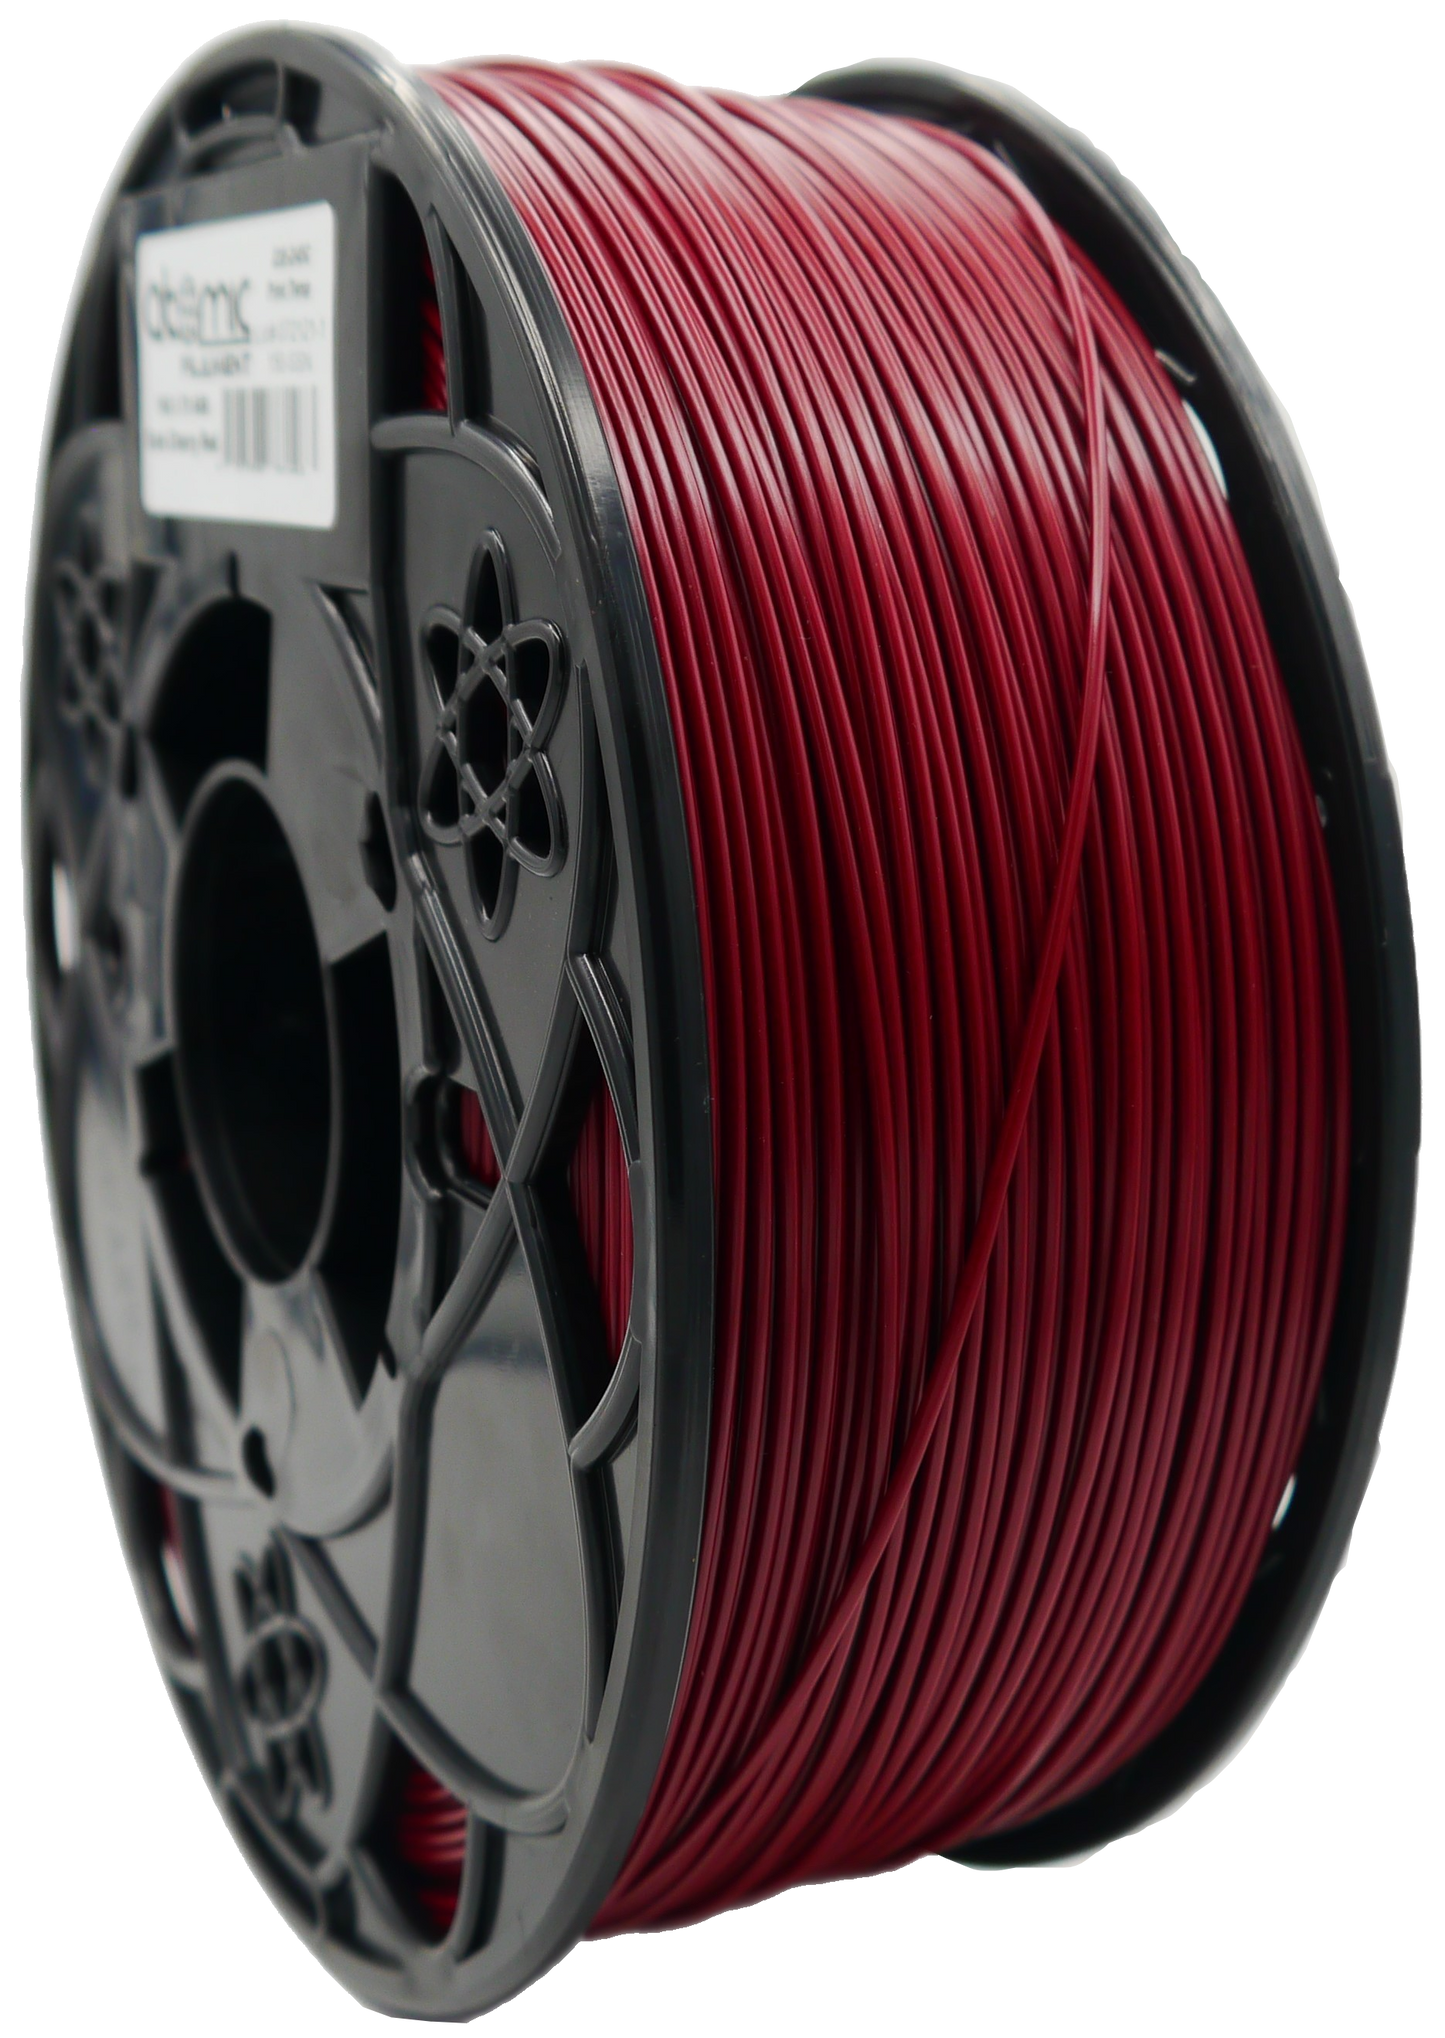 Dark Cherry Red ABS Filament